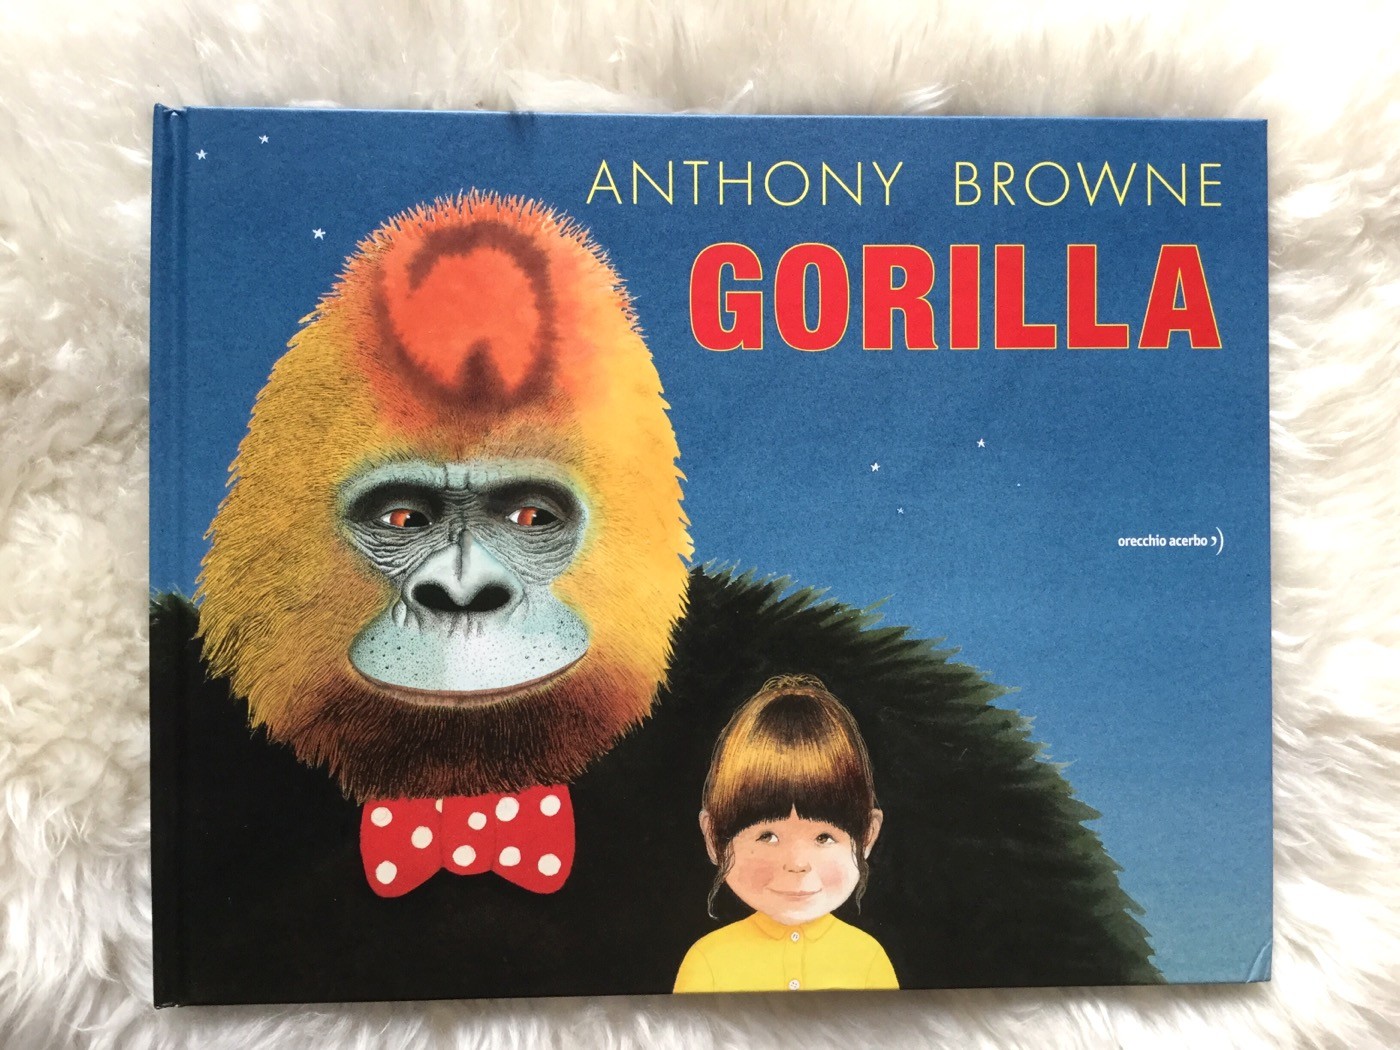 gorilla-anthony-browne-orecchio-acerbo-galline-volanti